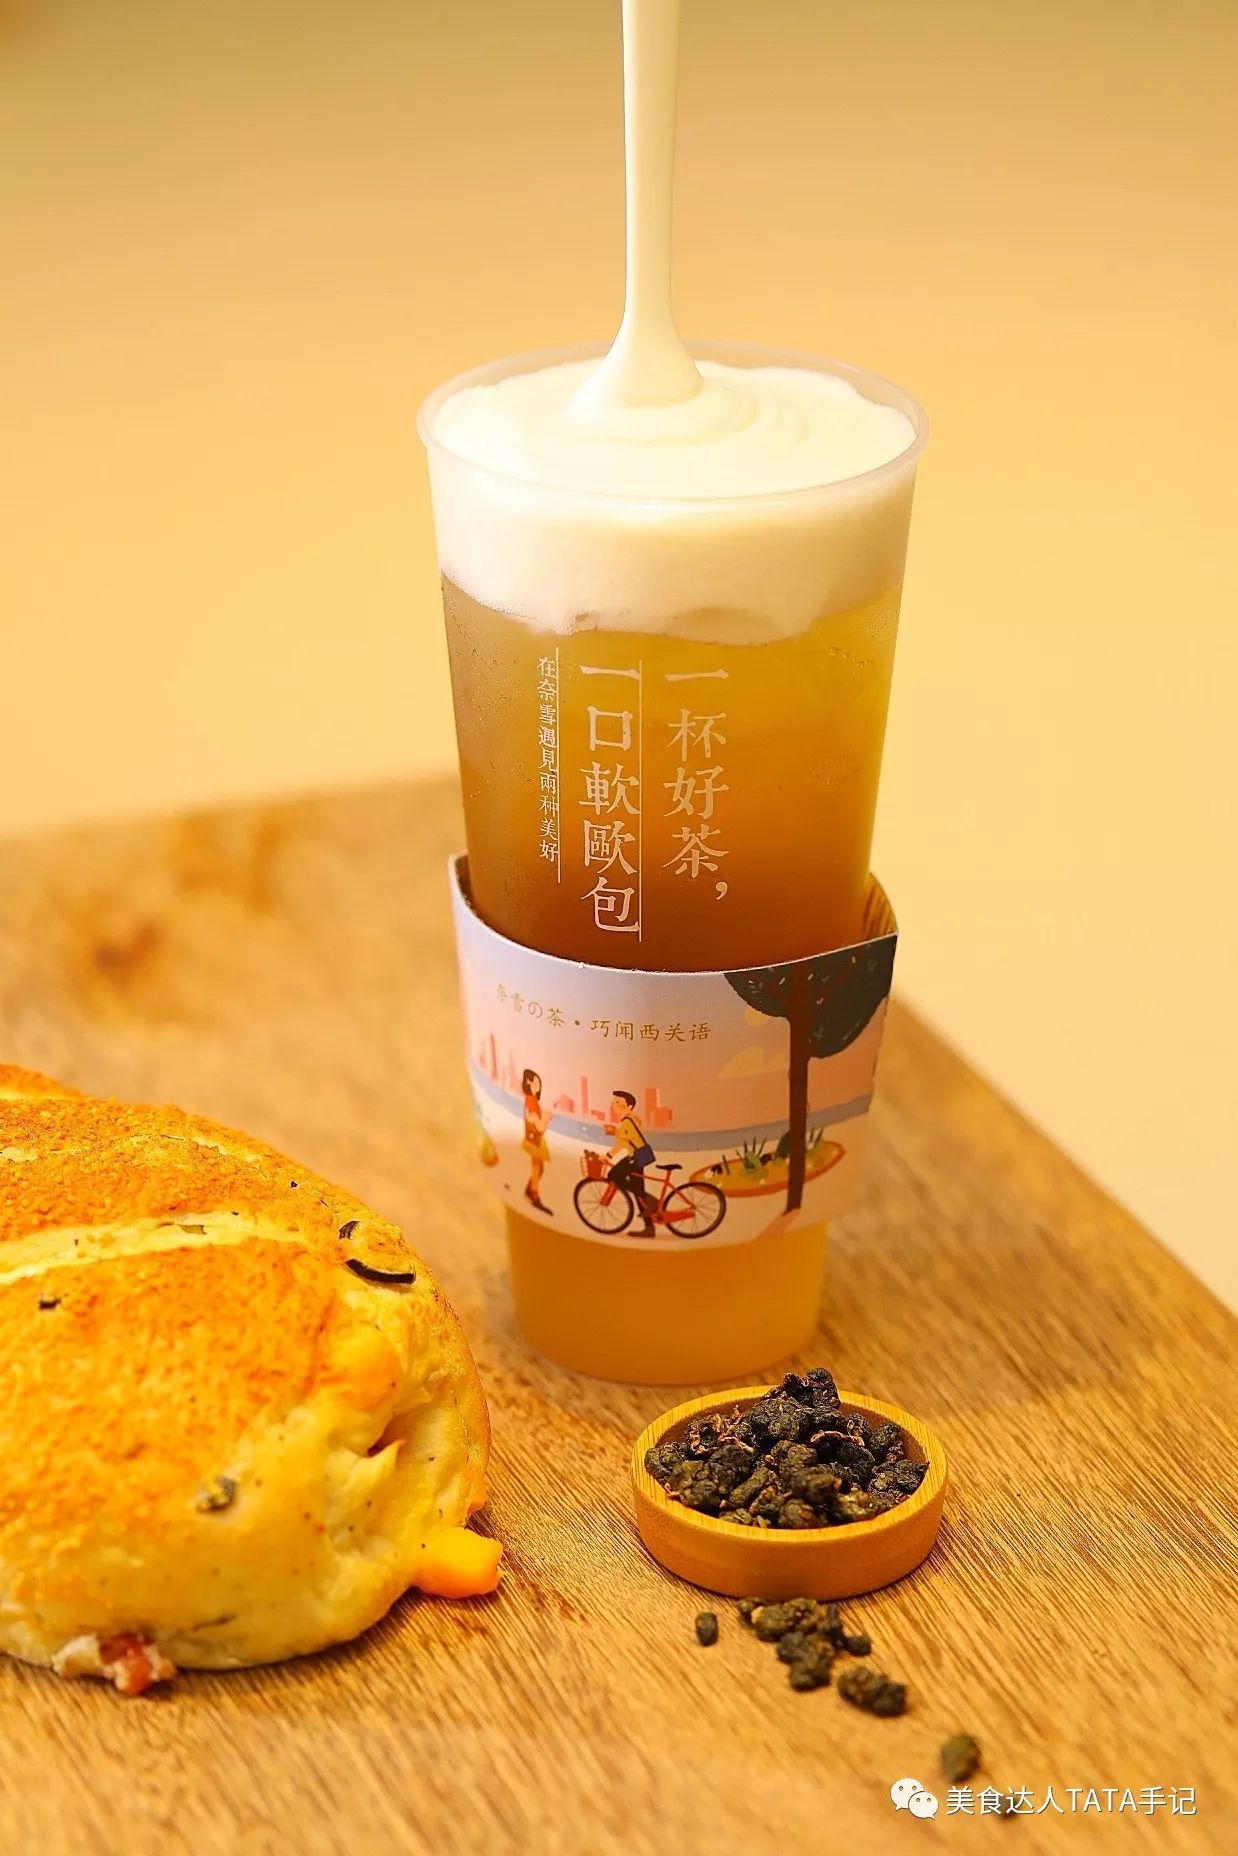 广州塔下开了最大最美的「奈雪の茶」?1月19-21日买茶